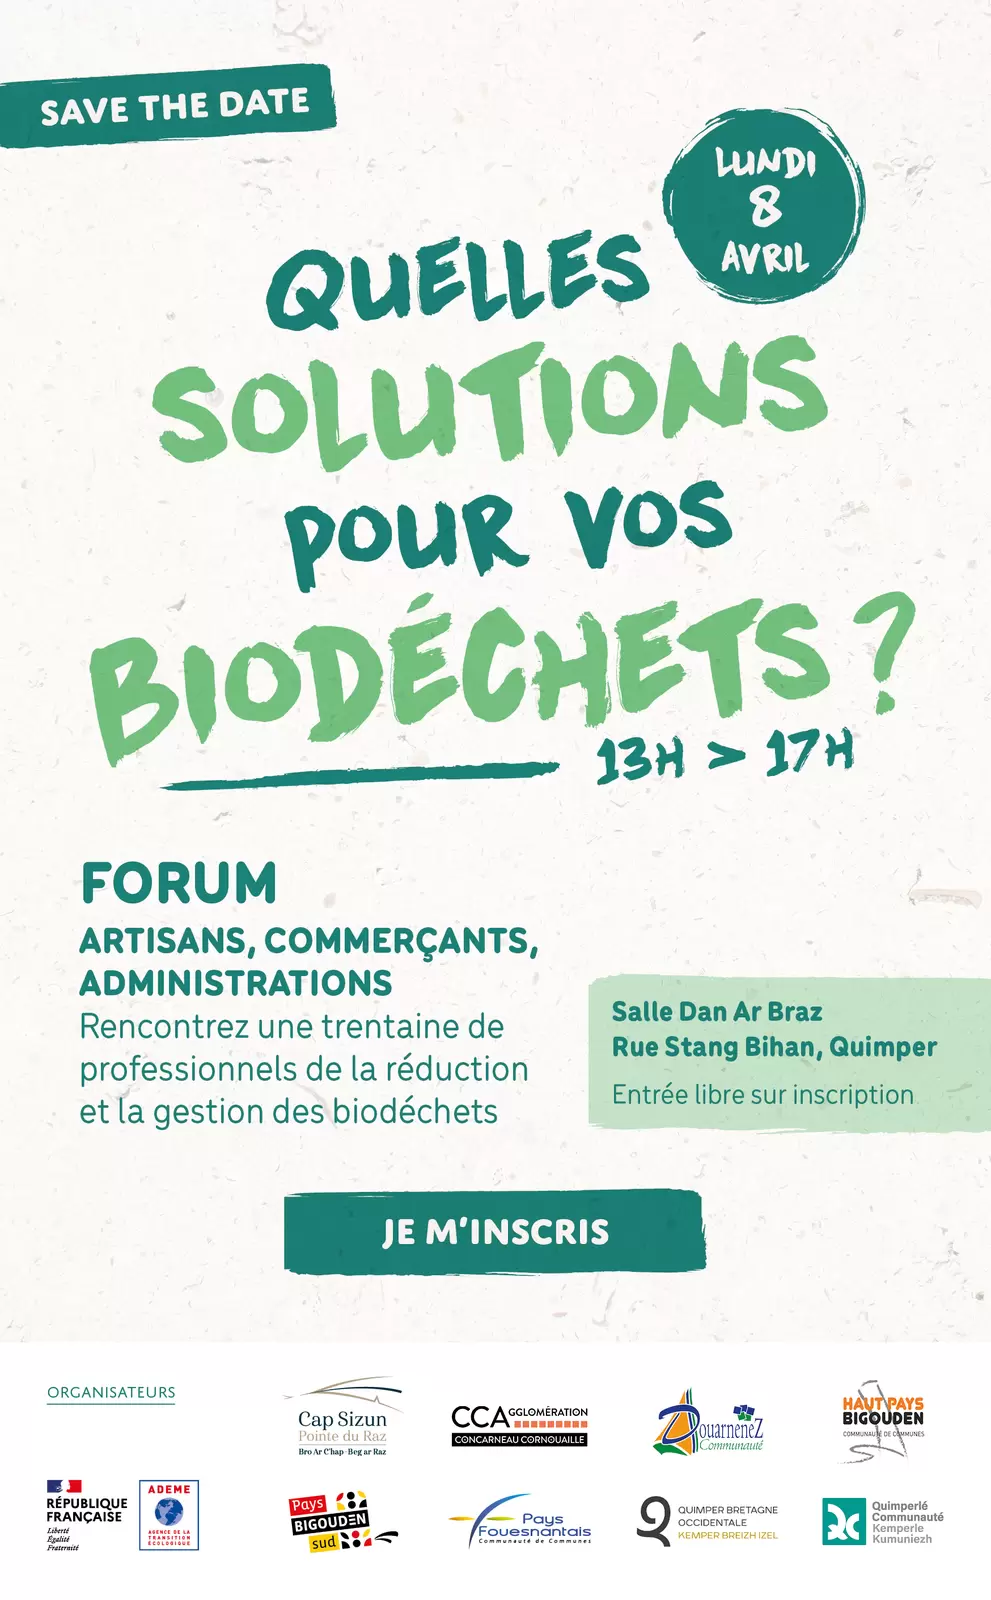 Artisans, commerçants, administrations : quelles solutions pour vos biodéchets ?